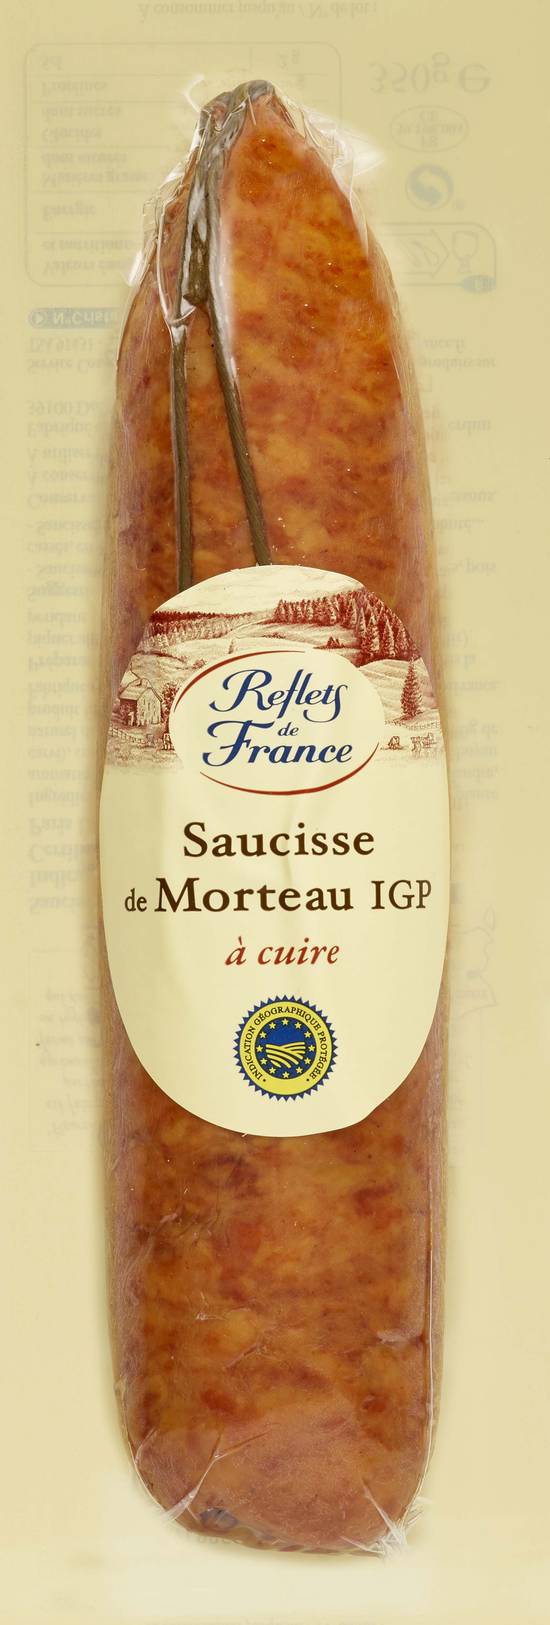 Reflets de France - Saucisse de morteau IGP à cuire